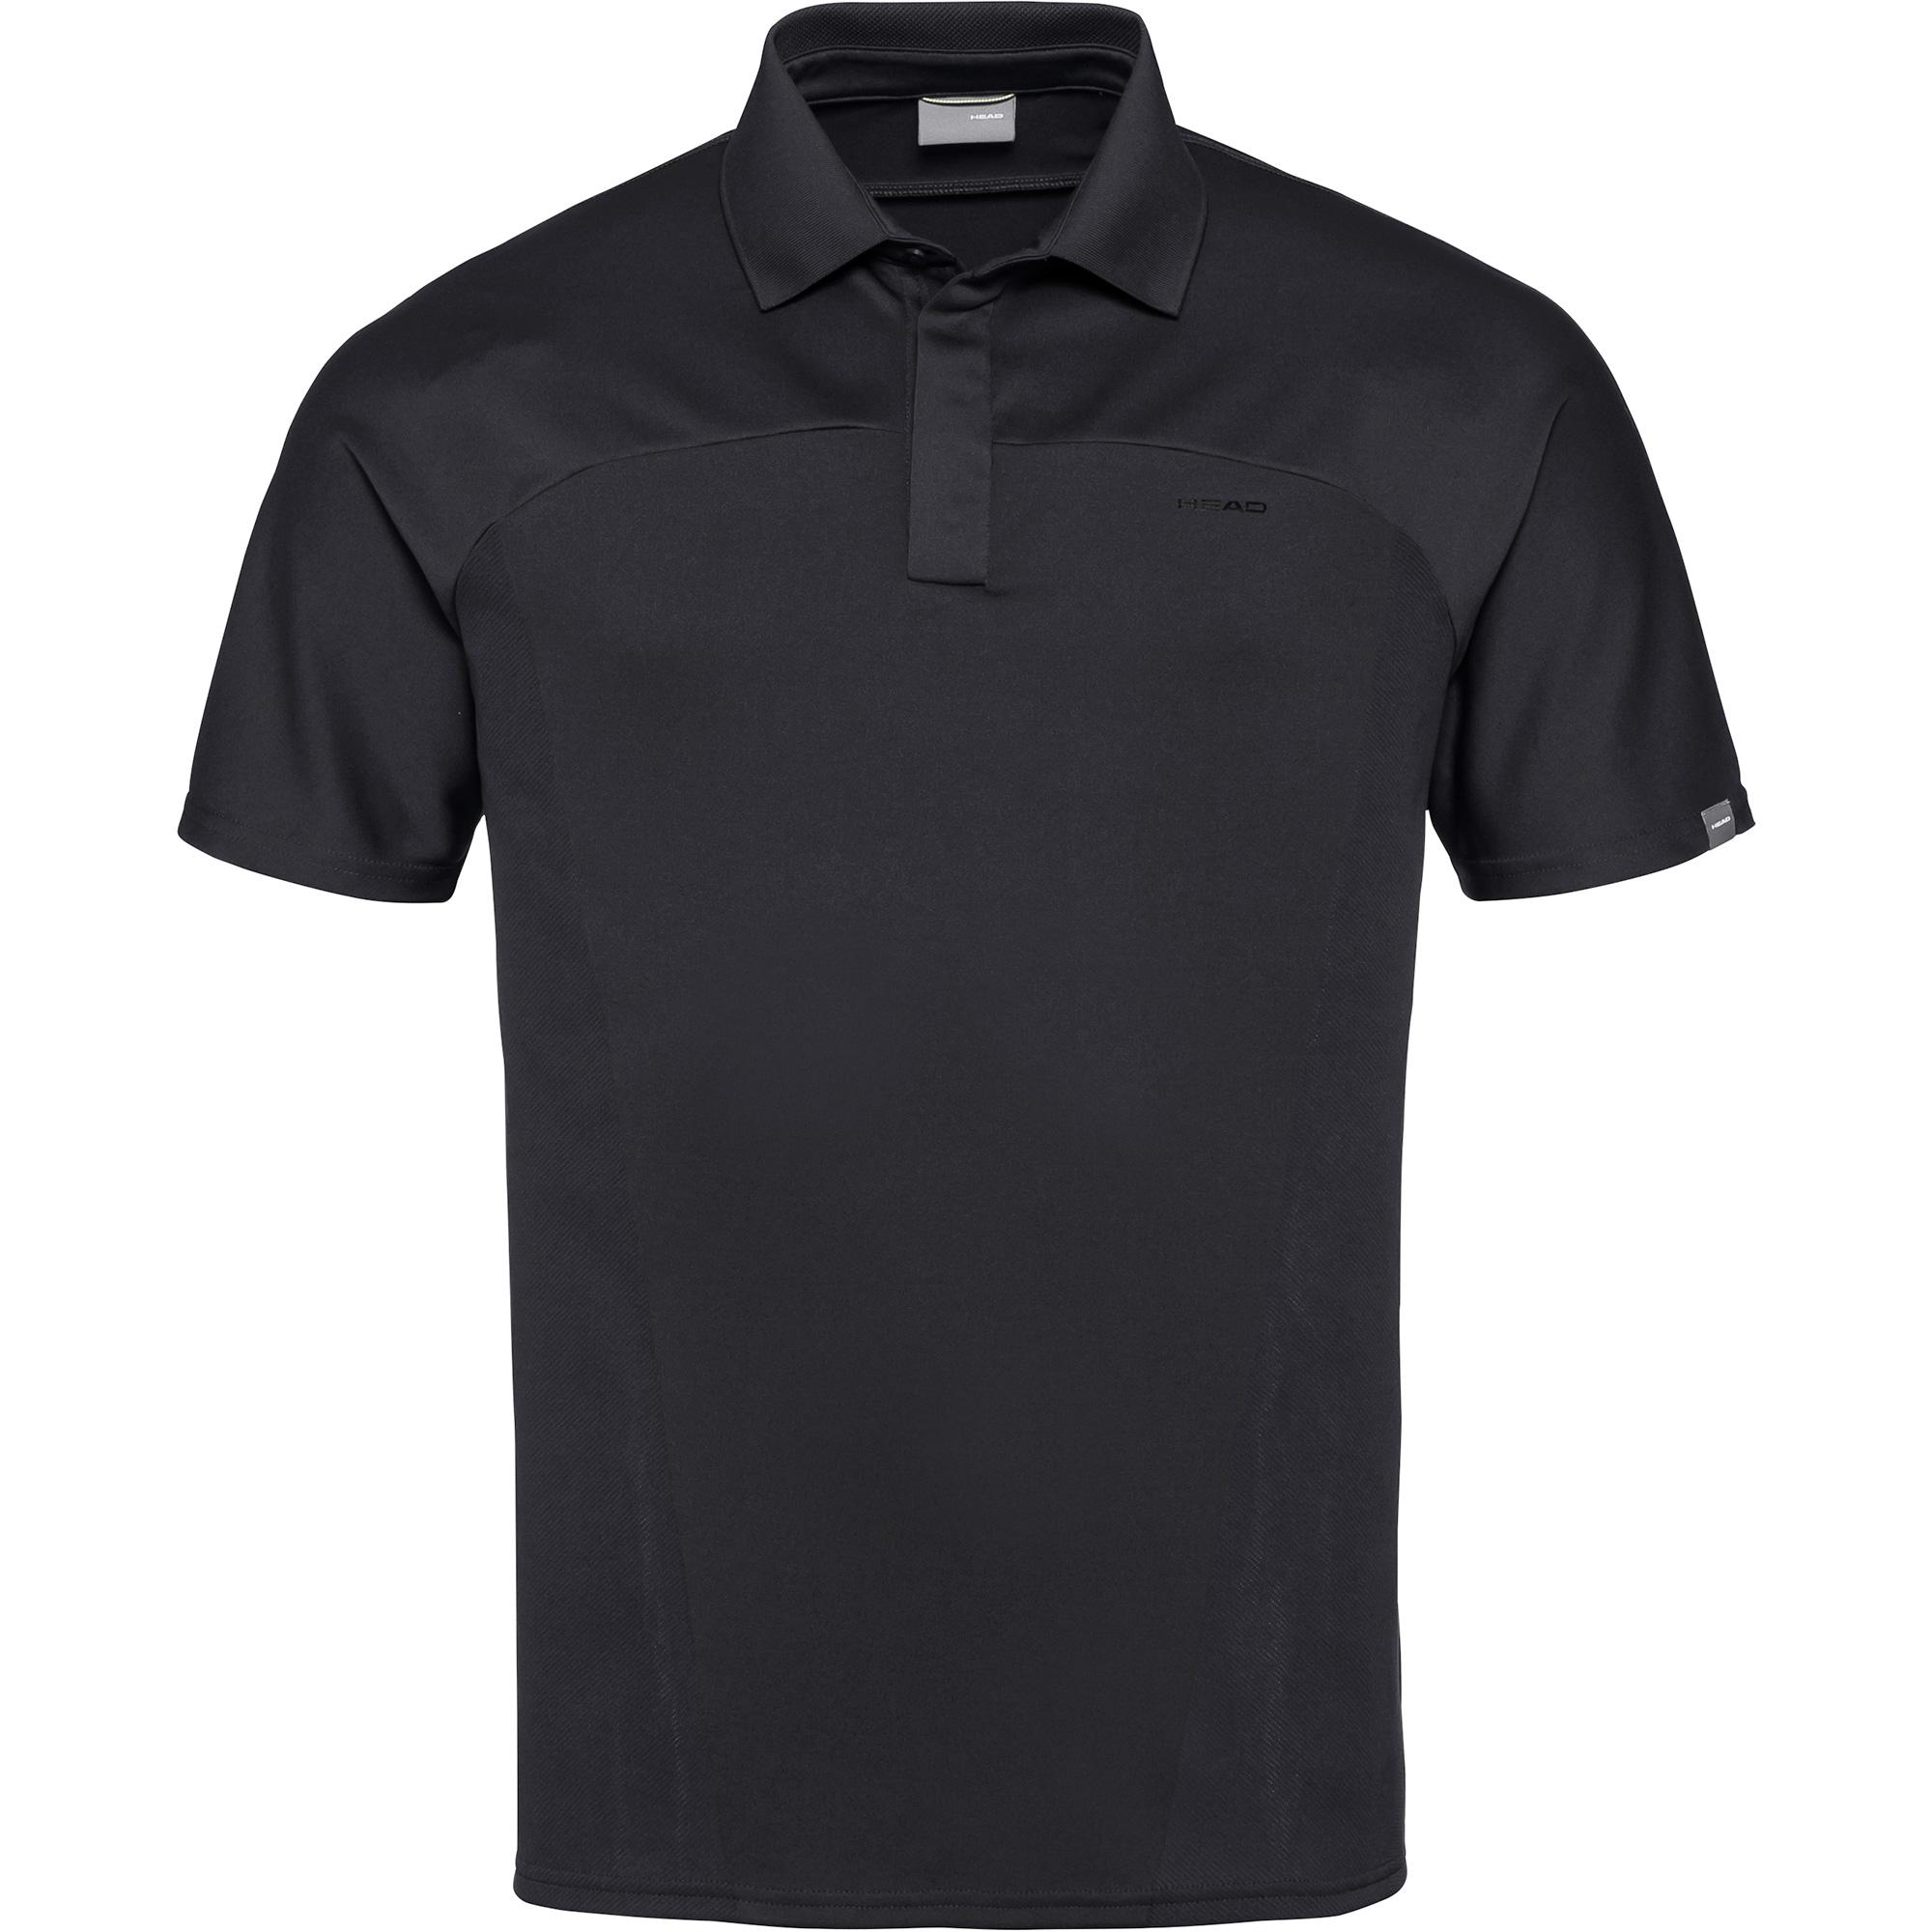 Head Mens Performance Polo Shirt - Black - Tennisnuts.com